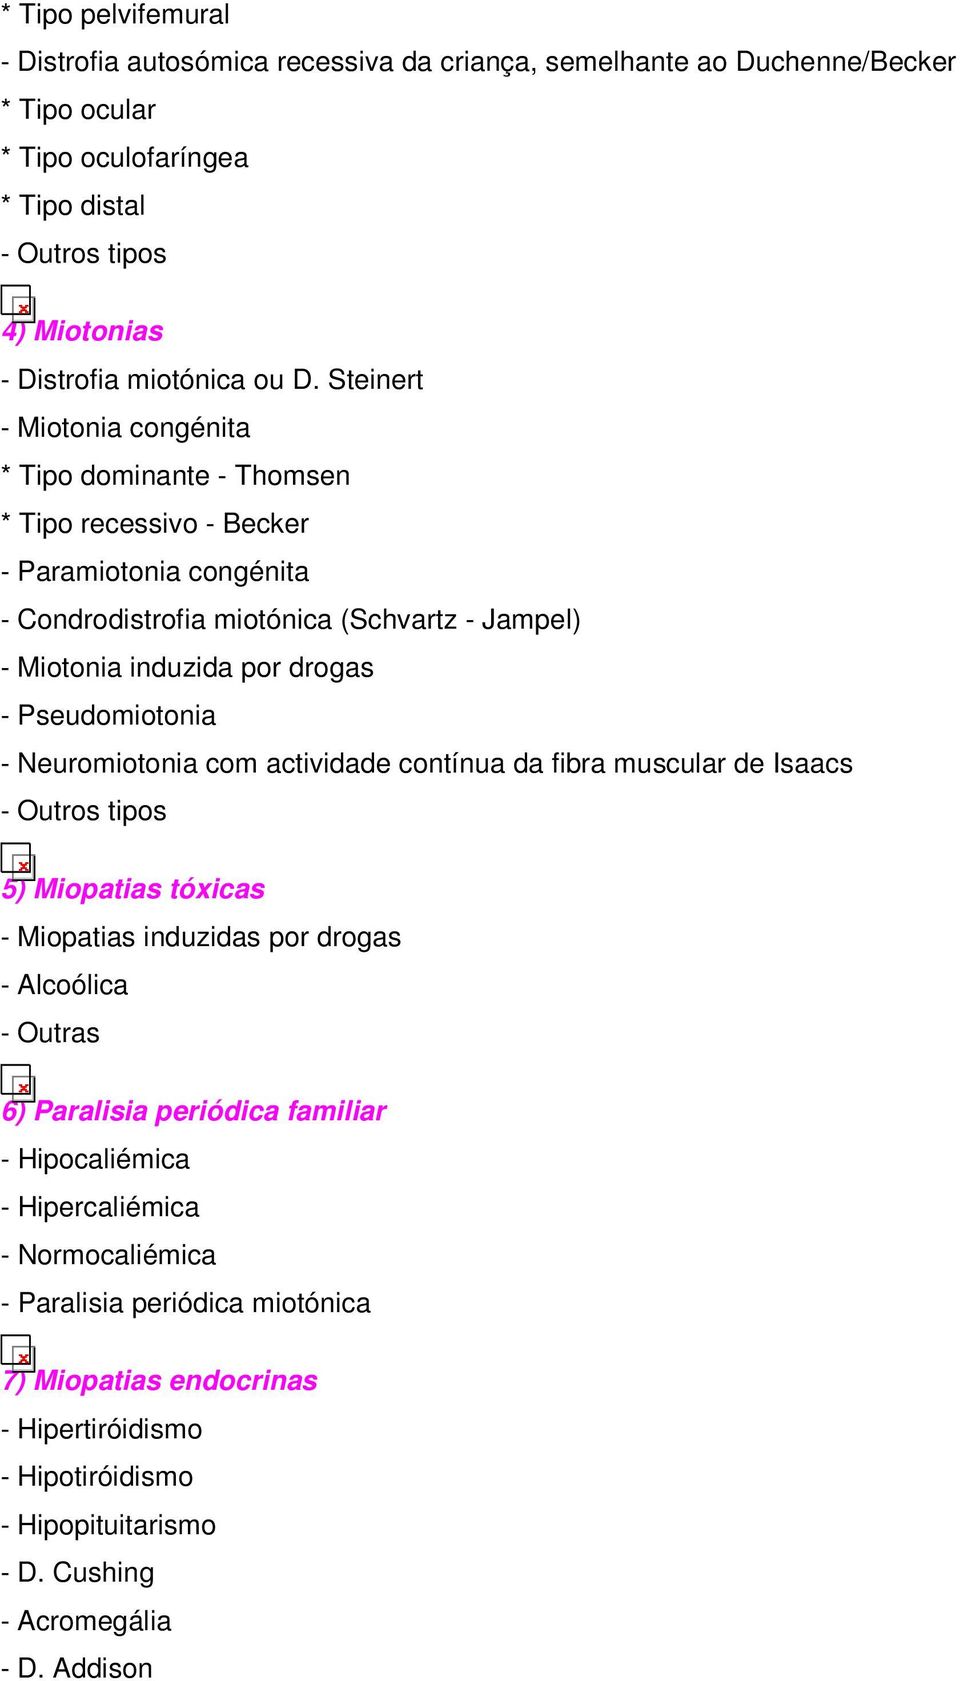 Pseudomiotonia - Neuromiotonia com actividade contínua da fibra muscular de Isaacs 5) Miopatias tóxicas - Miopatias induzidas por drogas - Alcoólica - Outras 6) Paralisia periódica familiar